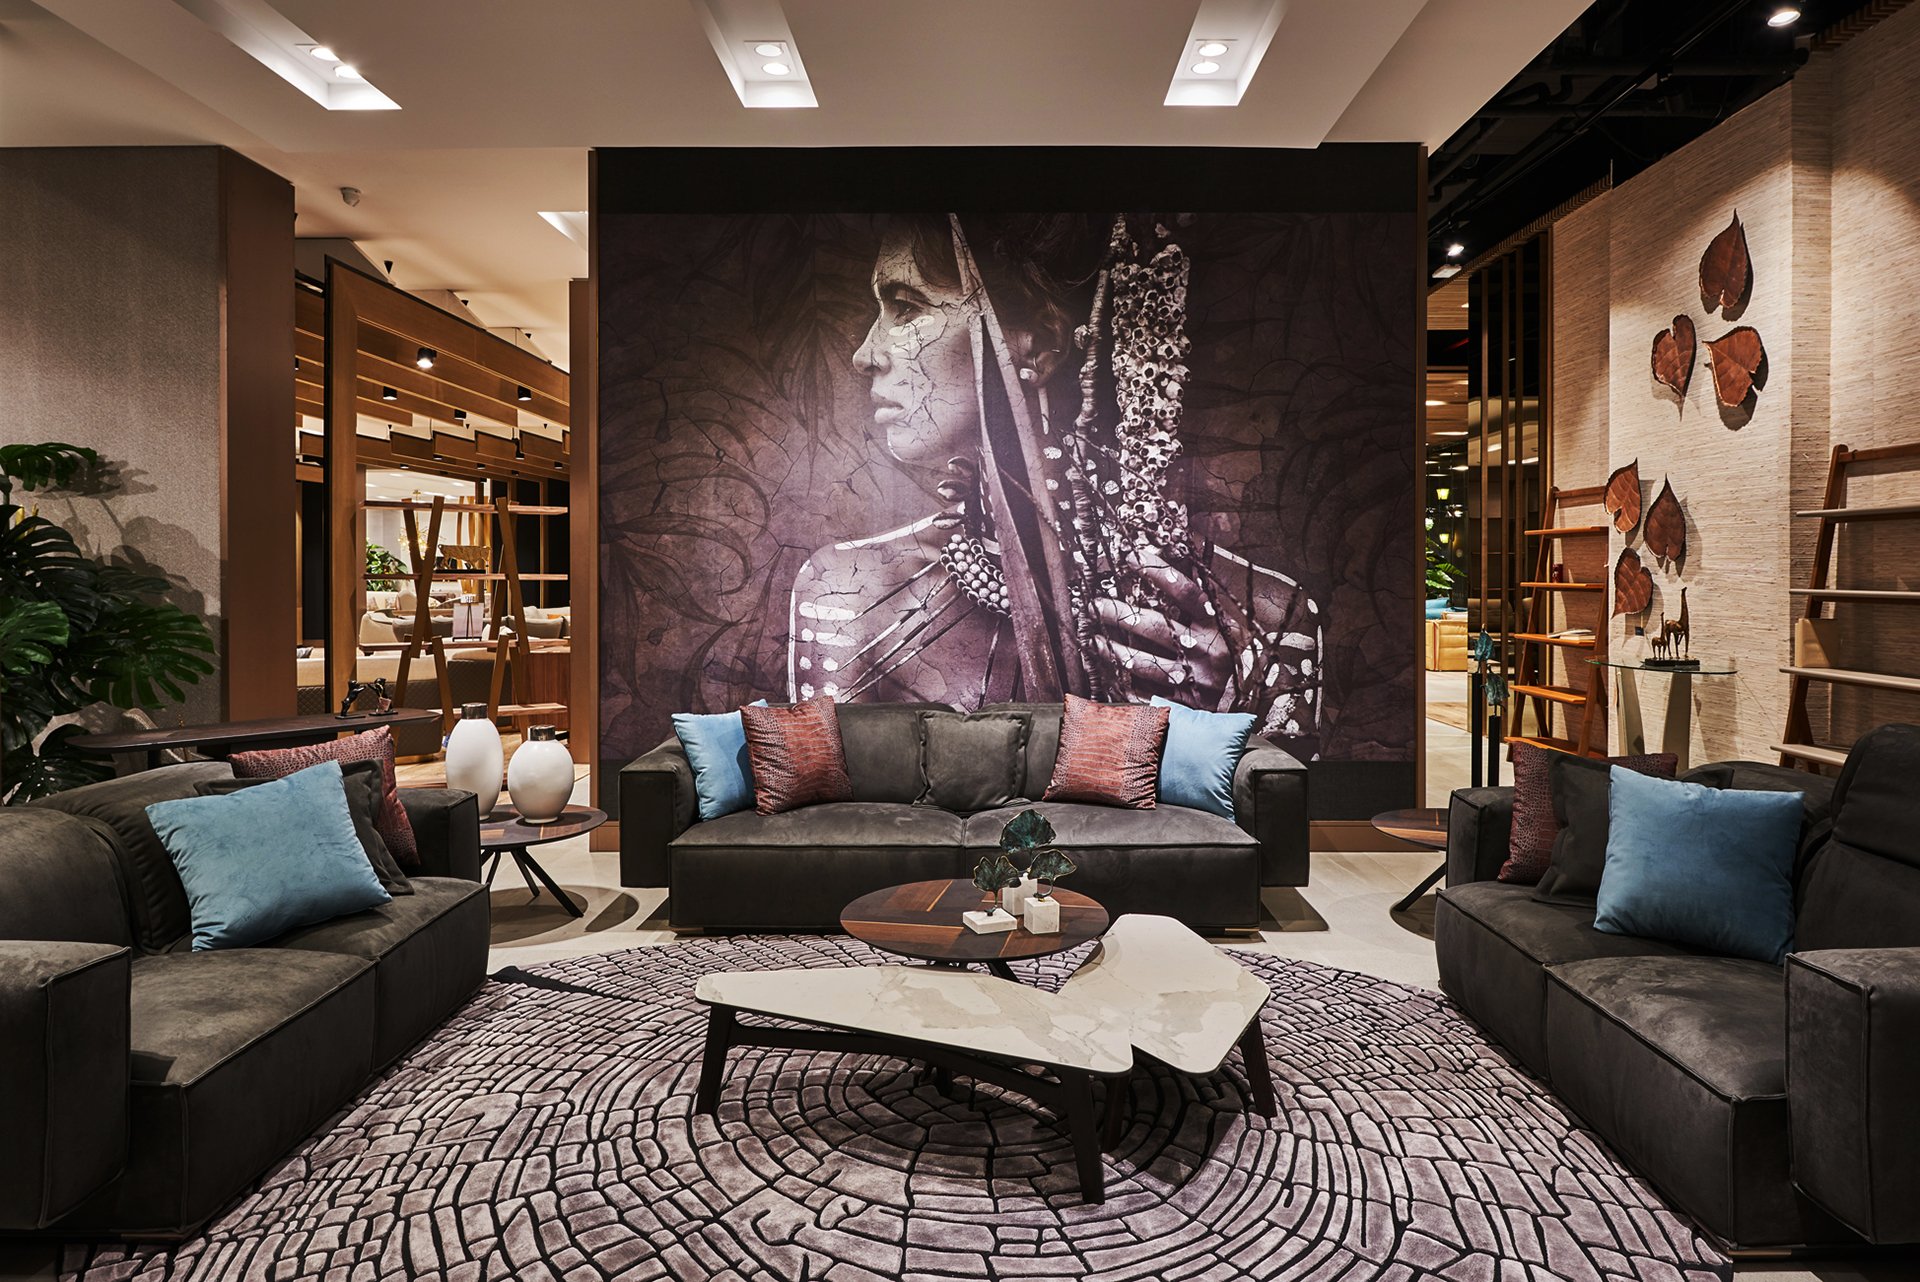 Al Huzaifa Furniture Showroom, Dubai Showroom Interior Design on Love